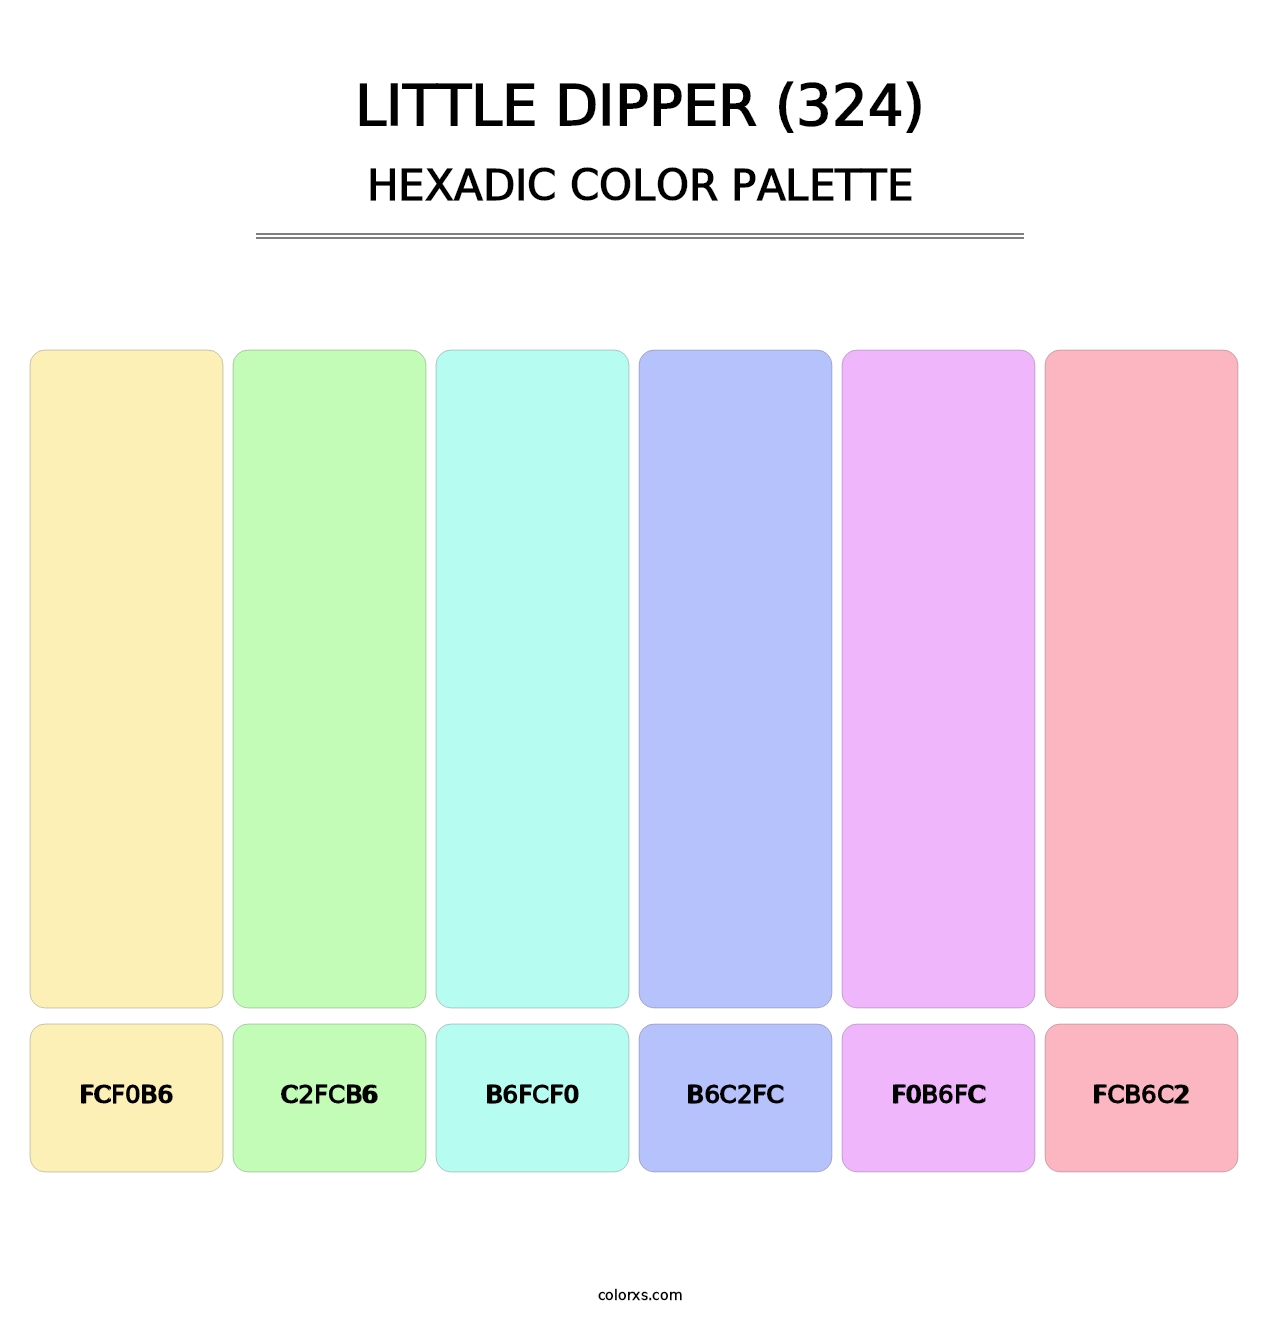 Little Dipper (324) - Hexadic Color Palette